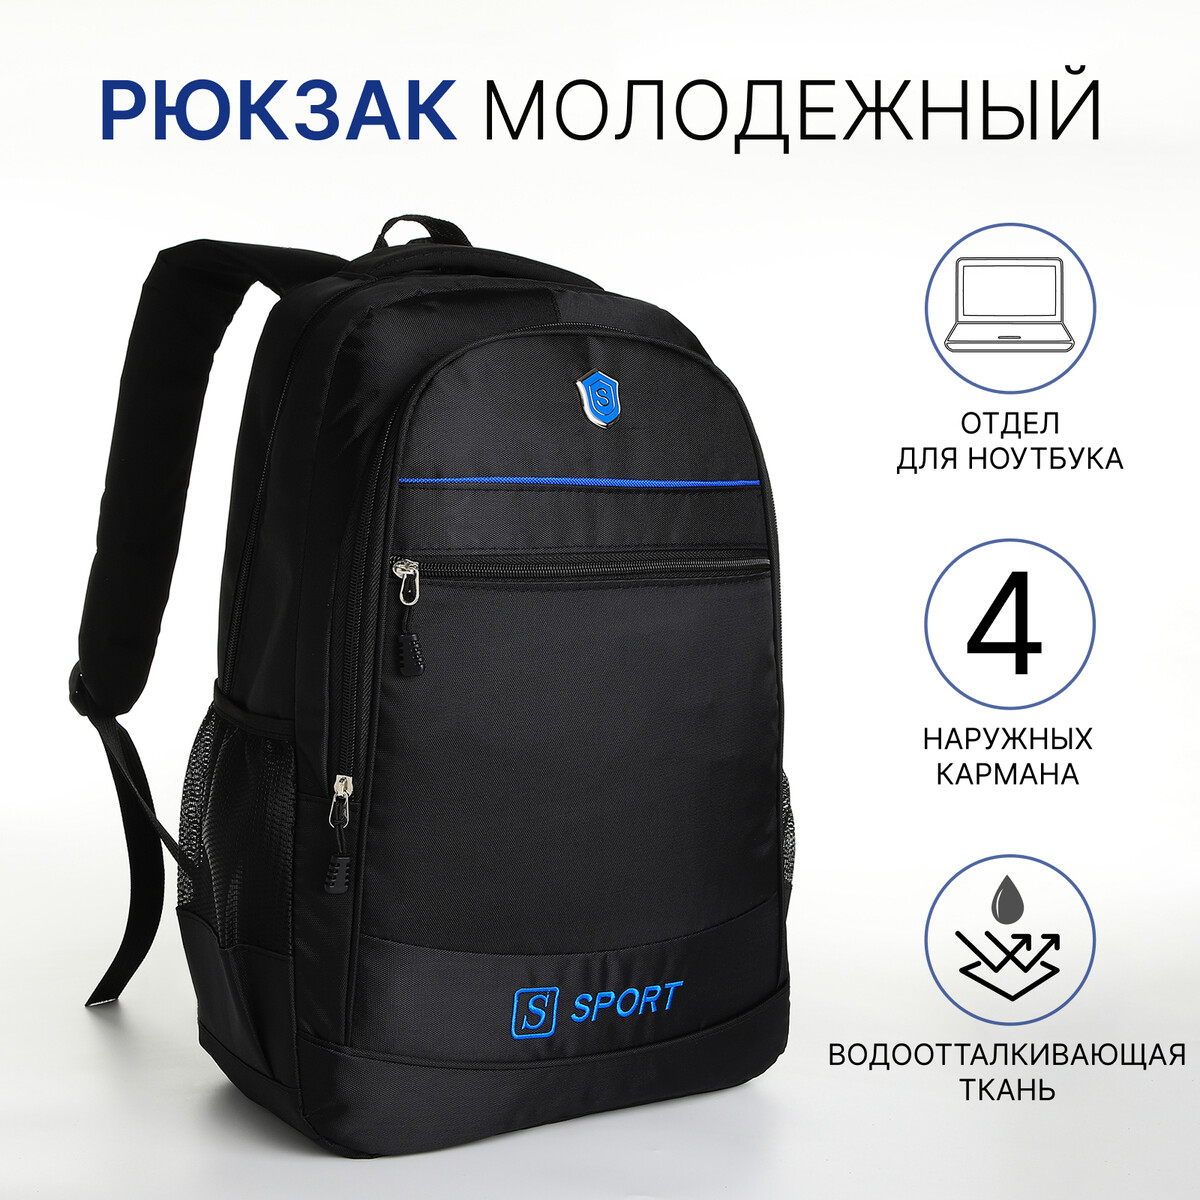 Рюкзак молодежный из текстиля на молнии, 4 карманов, цвет черный/синий рюкзак молодежный из текстиля 5 карманов синий